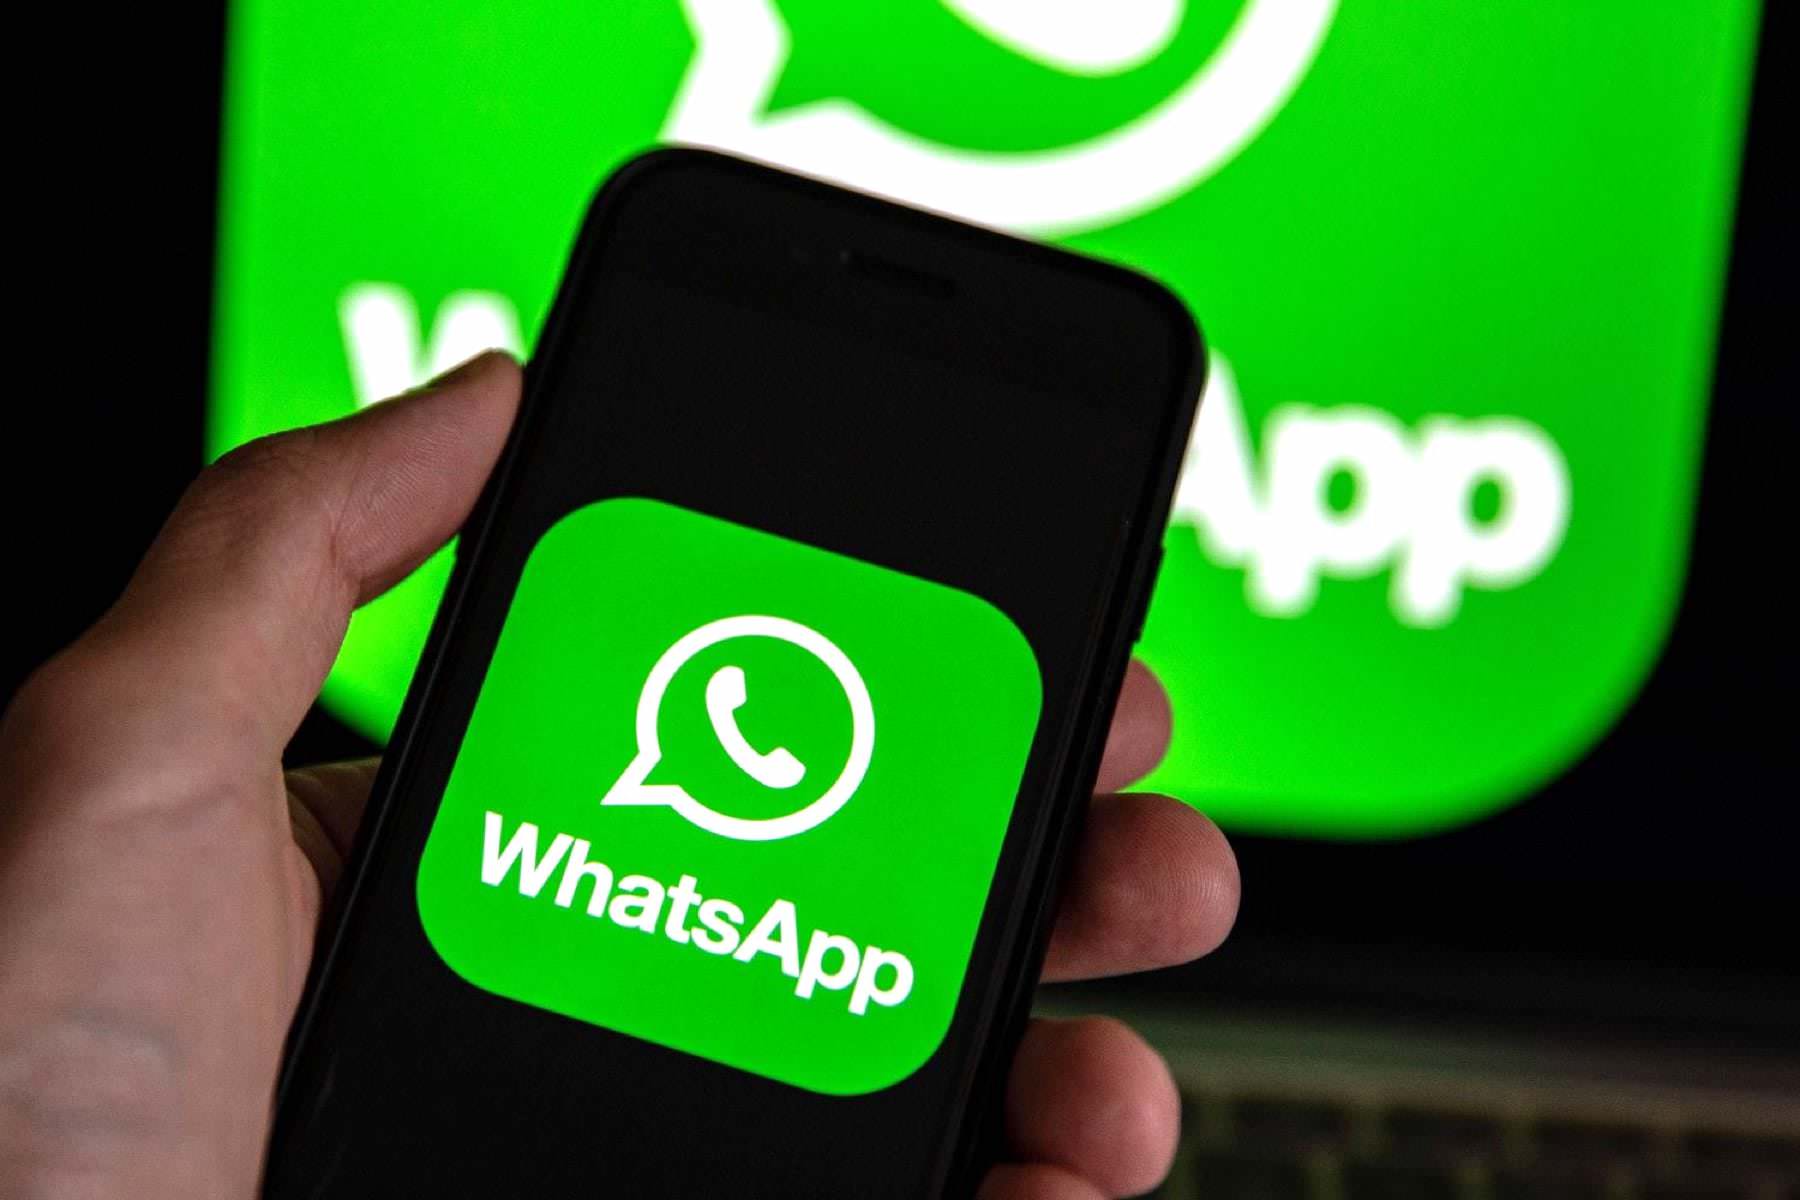 WhatsApp с 27 марта начнет массово блокировать аккаунты пользователей